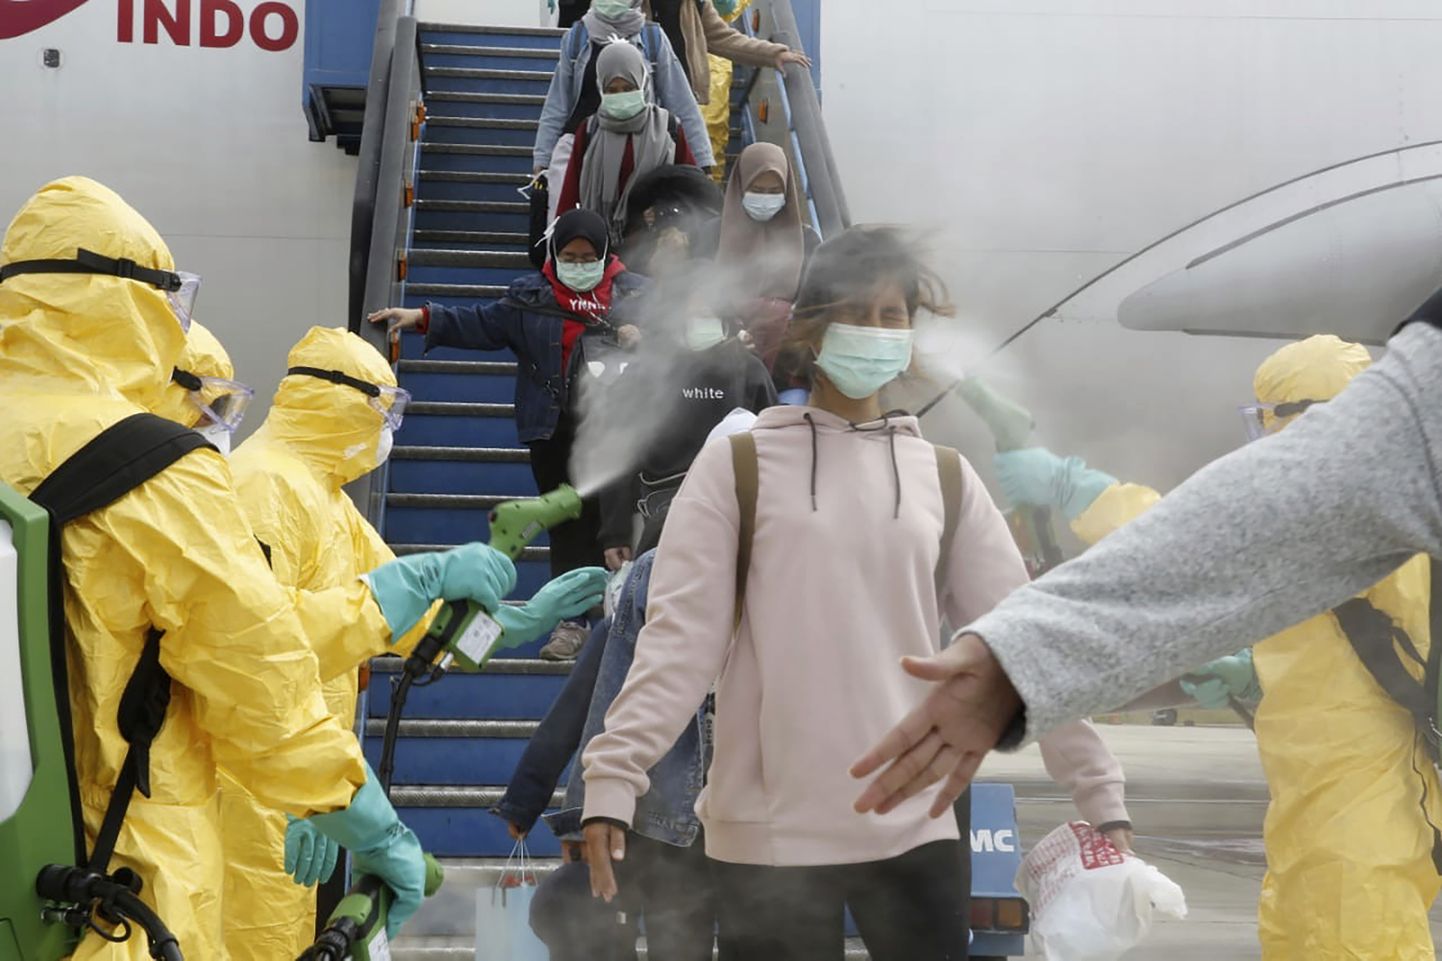 Uue koroonaviiruse epitsentrist saabunud turistide pritsimine antiseptikuga Indoneesias Batami lennujaamas.